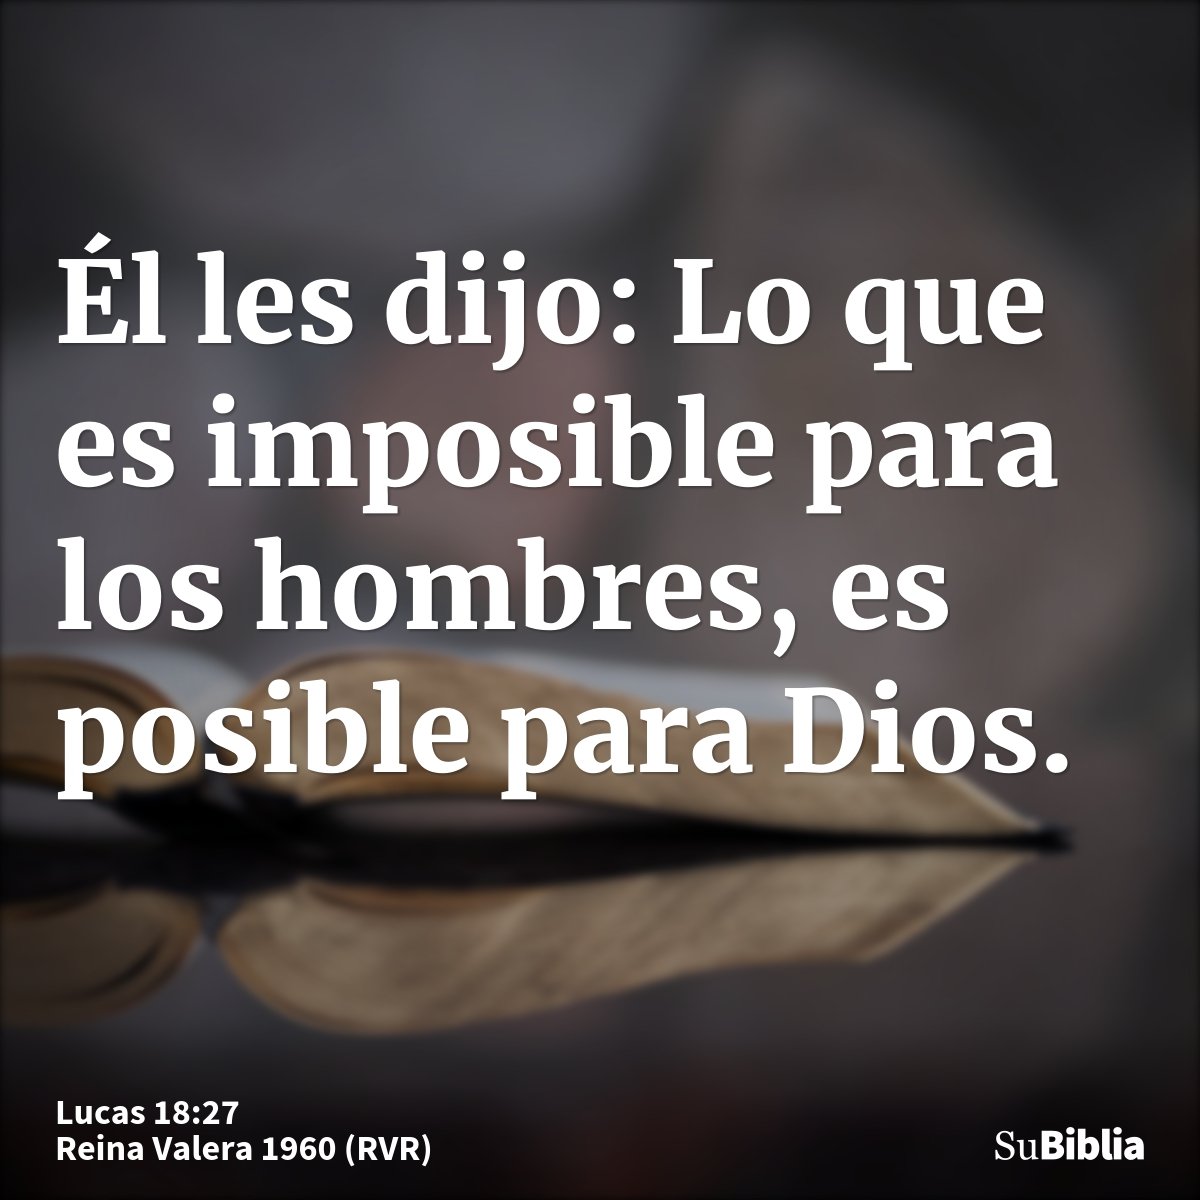 Él les dijo: Lo que es imposible para los hombres, es posible para Dios.